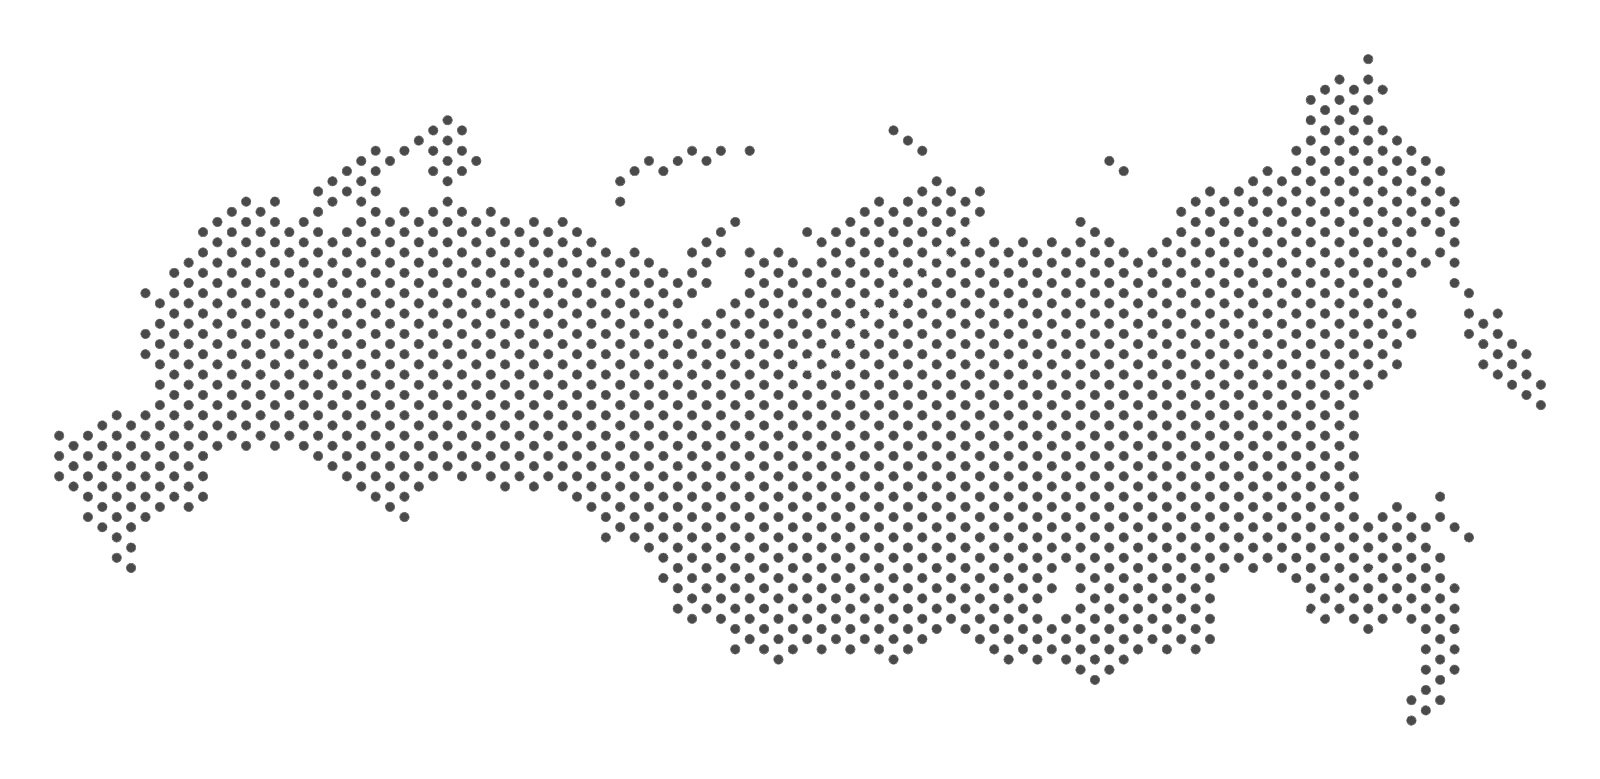 Карта РФ С точками. Очертания России на прозрачном фоне. Карта РФ вектор точками. Карта России точками вектор.